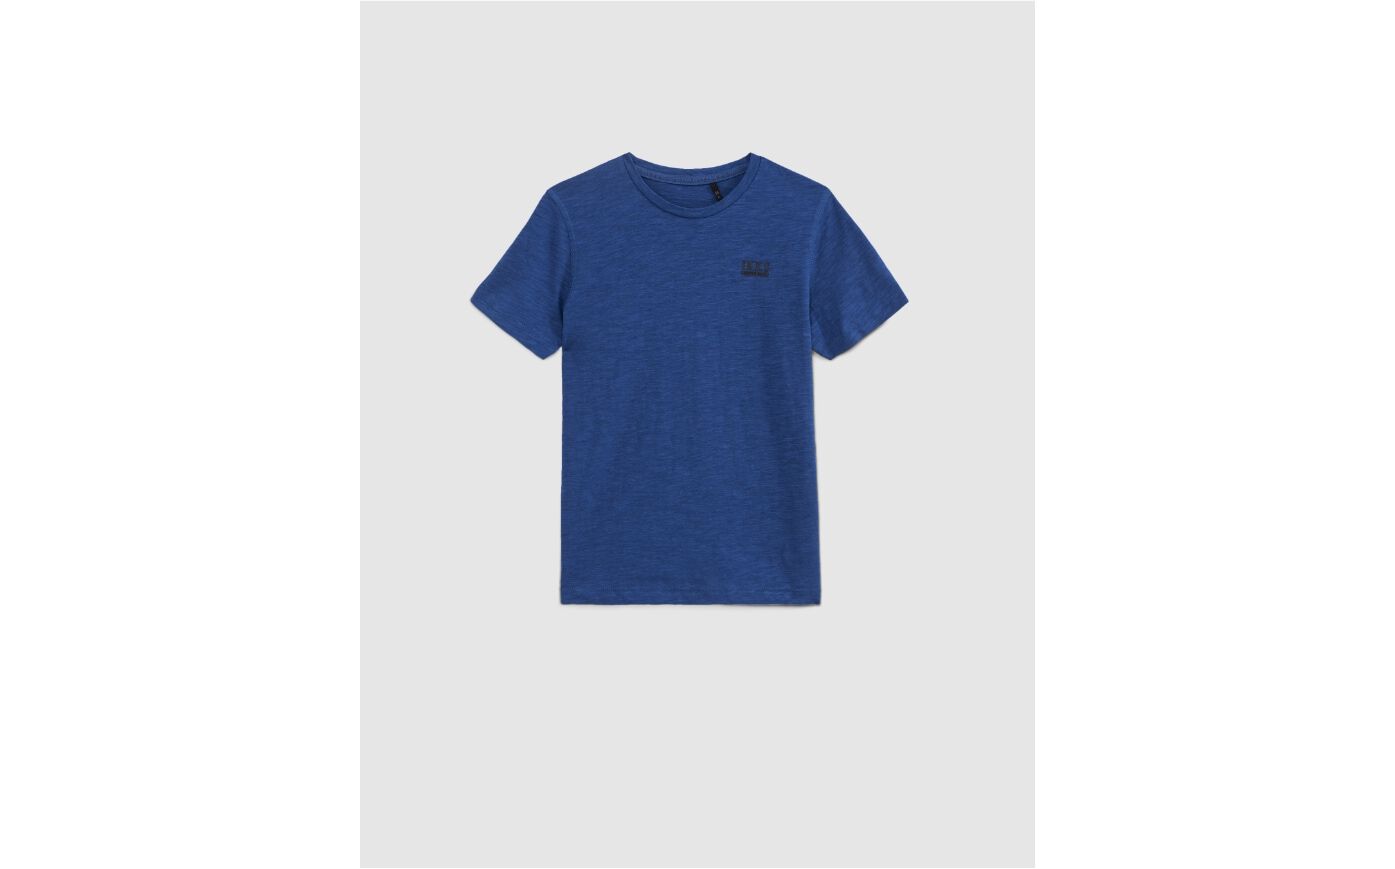 Camiseta azul Essentiel de algodón bio niño